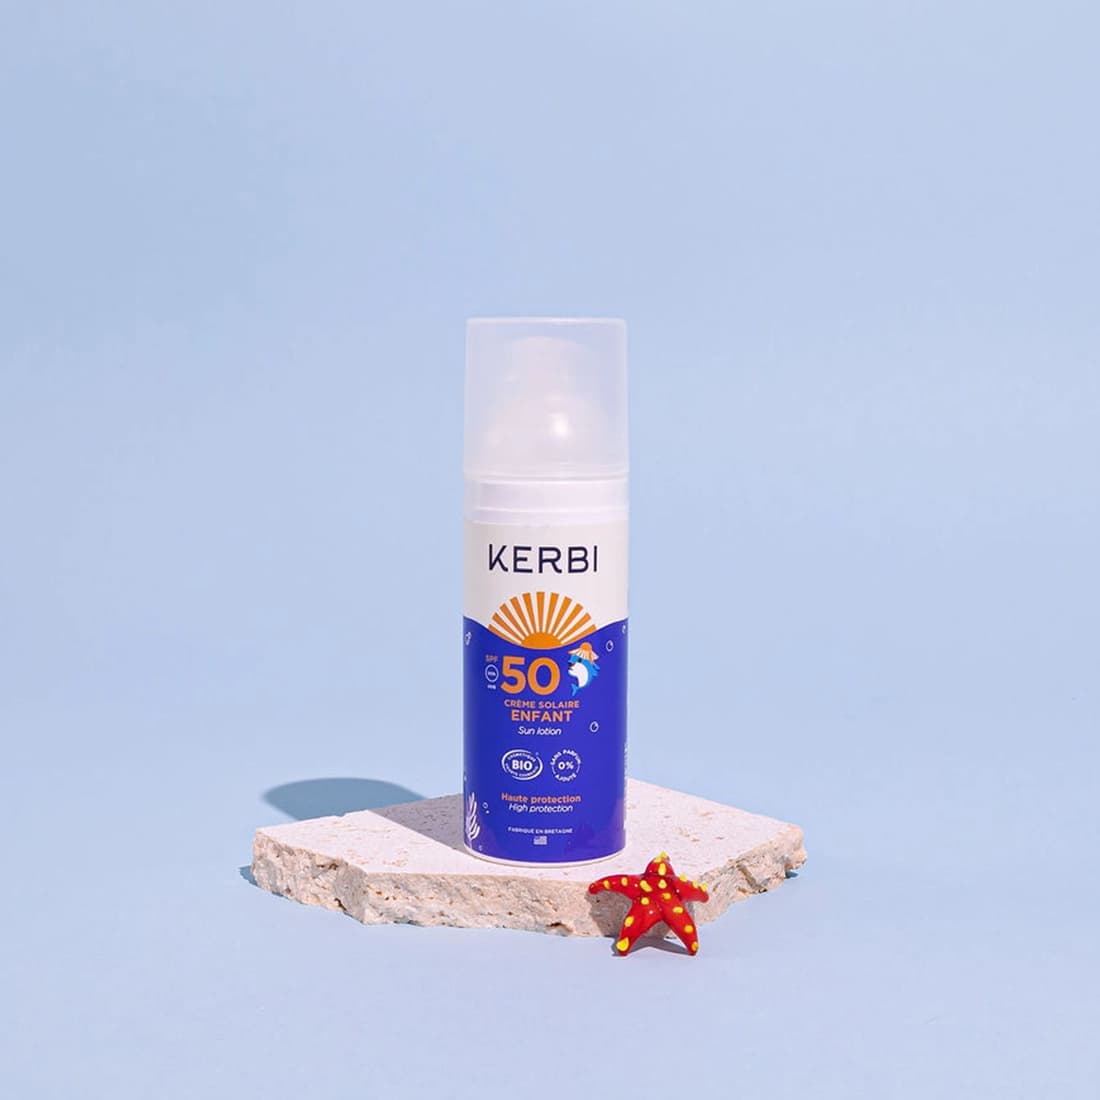 Creme solaire SPF50 Kerbi - Formule douce, spécialement conçue pour la peau délicate des enfants, protection UVA/UVB